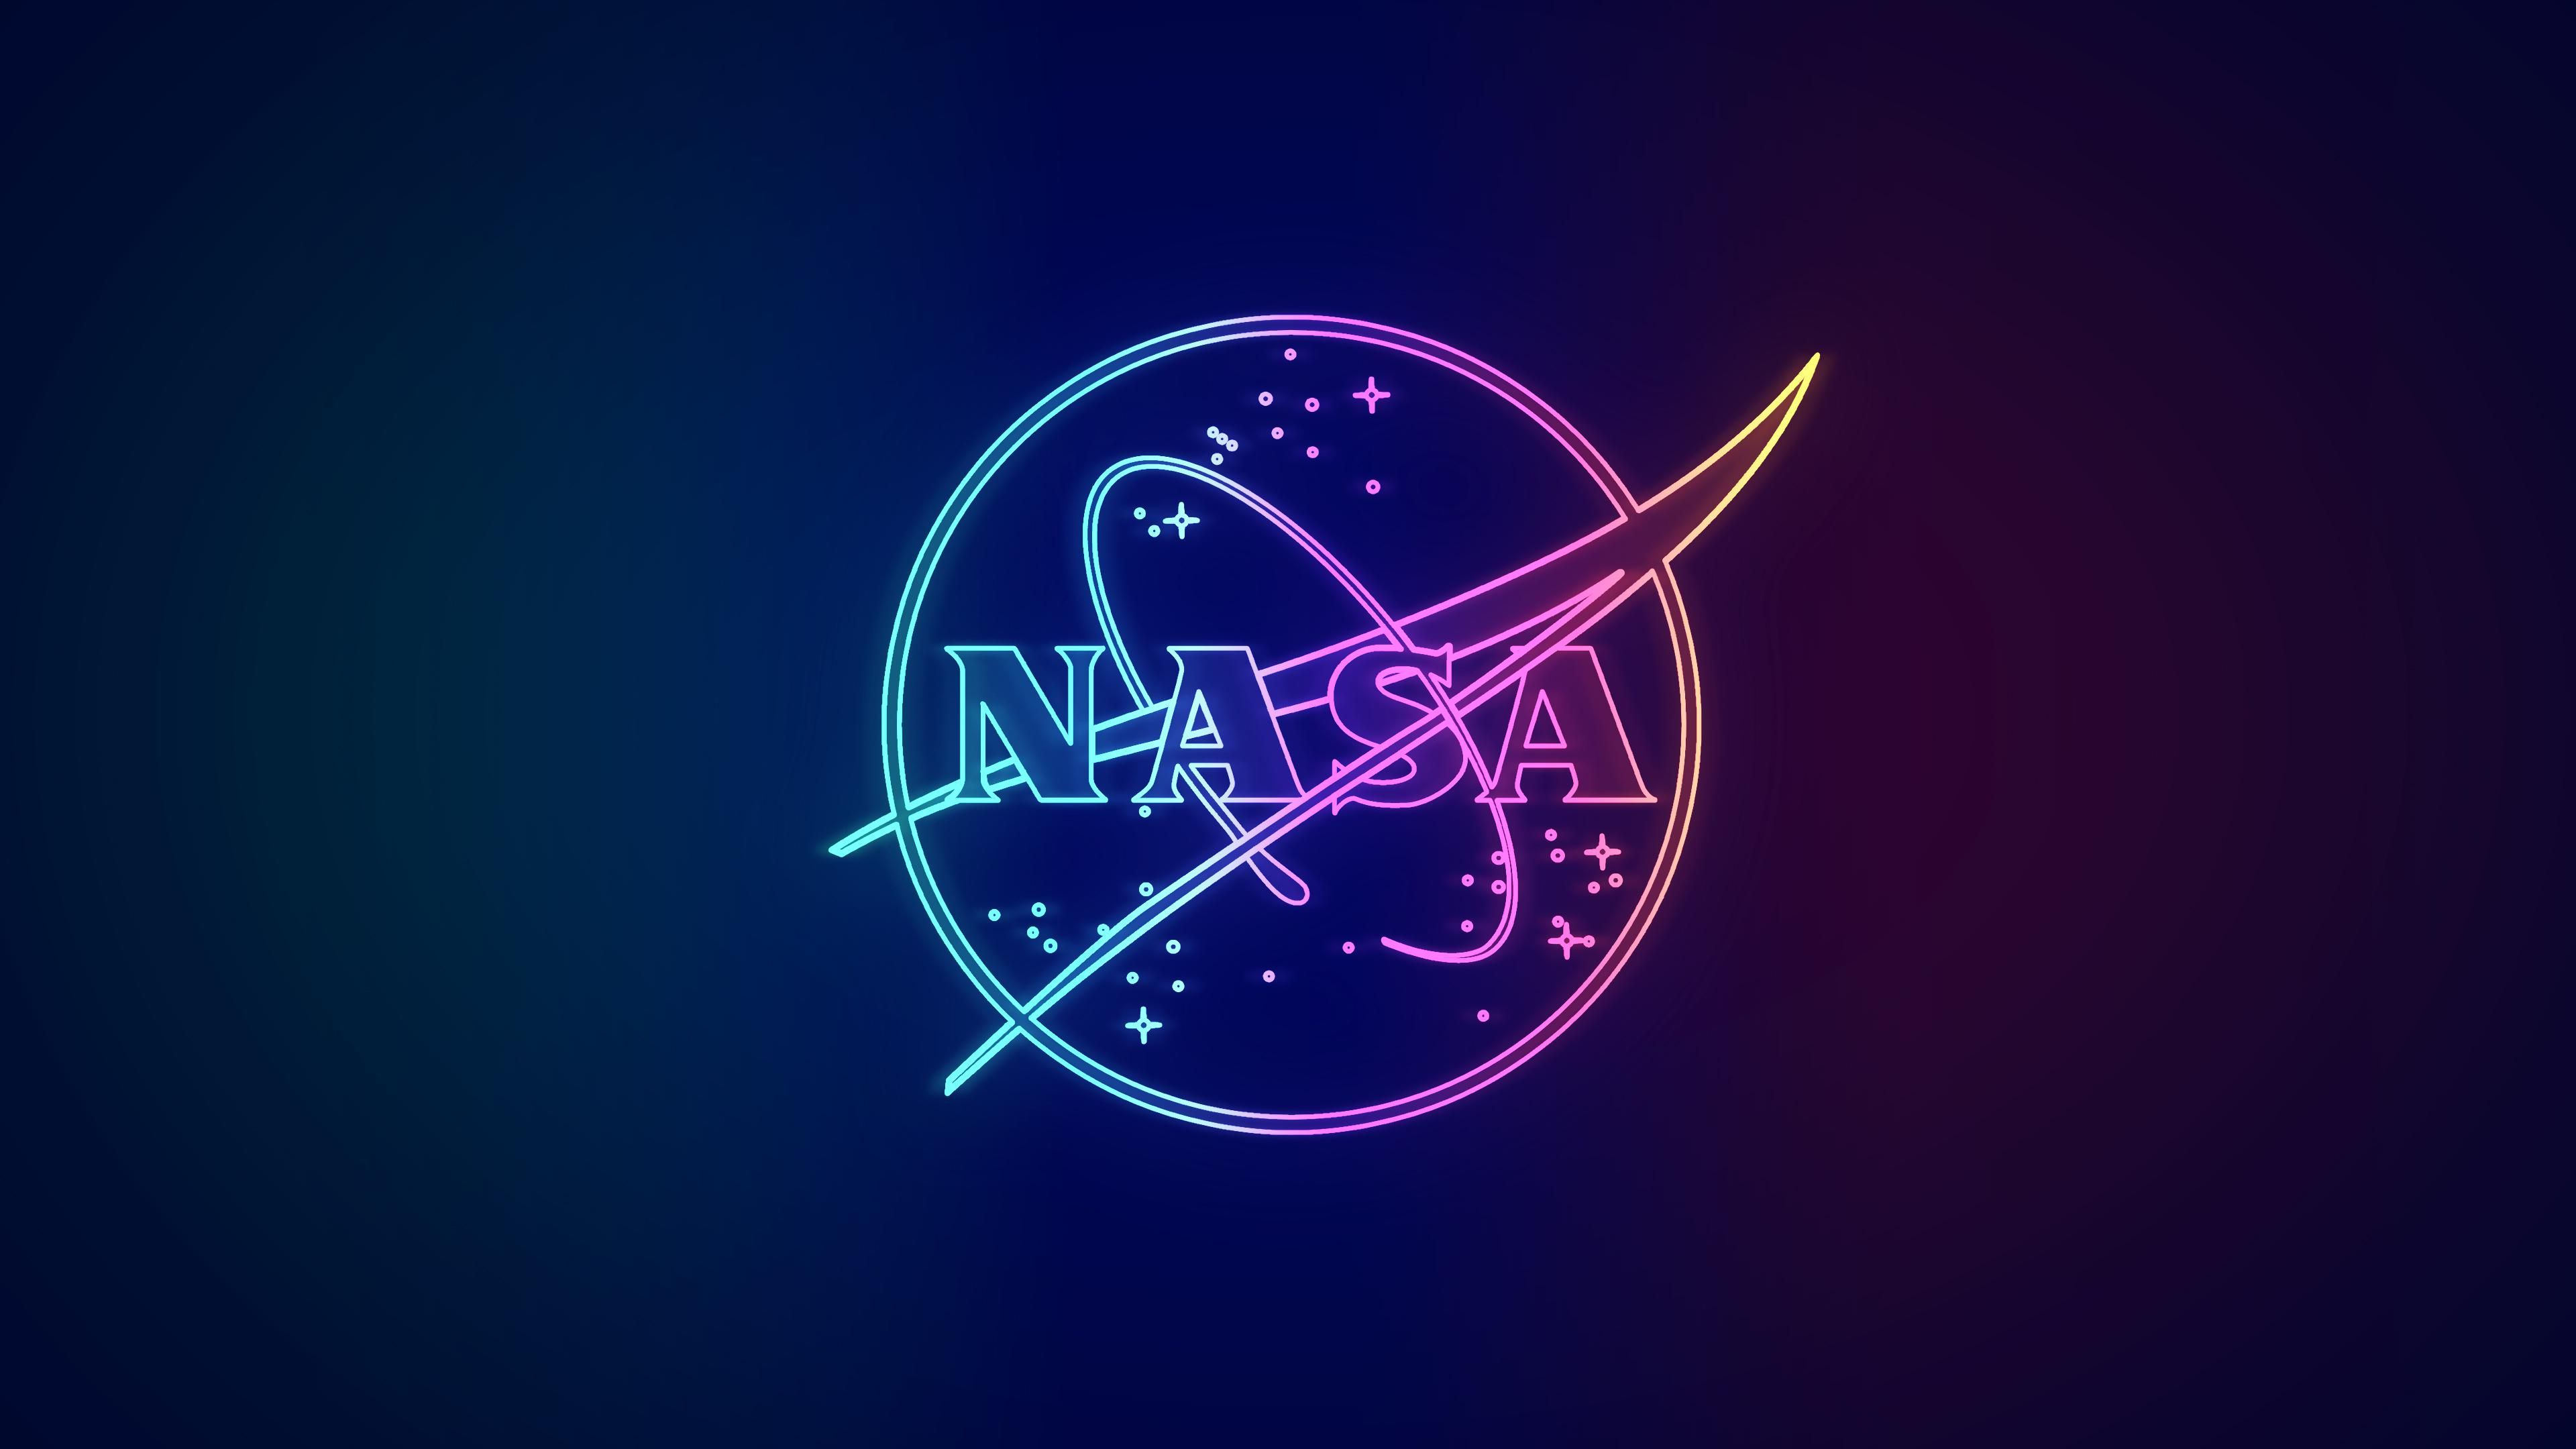 3840x2160 Neon NASA Wallpaper [3840 x 2160] | Nasa wallpaper, Nasa, Wallpaper